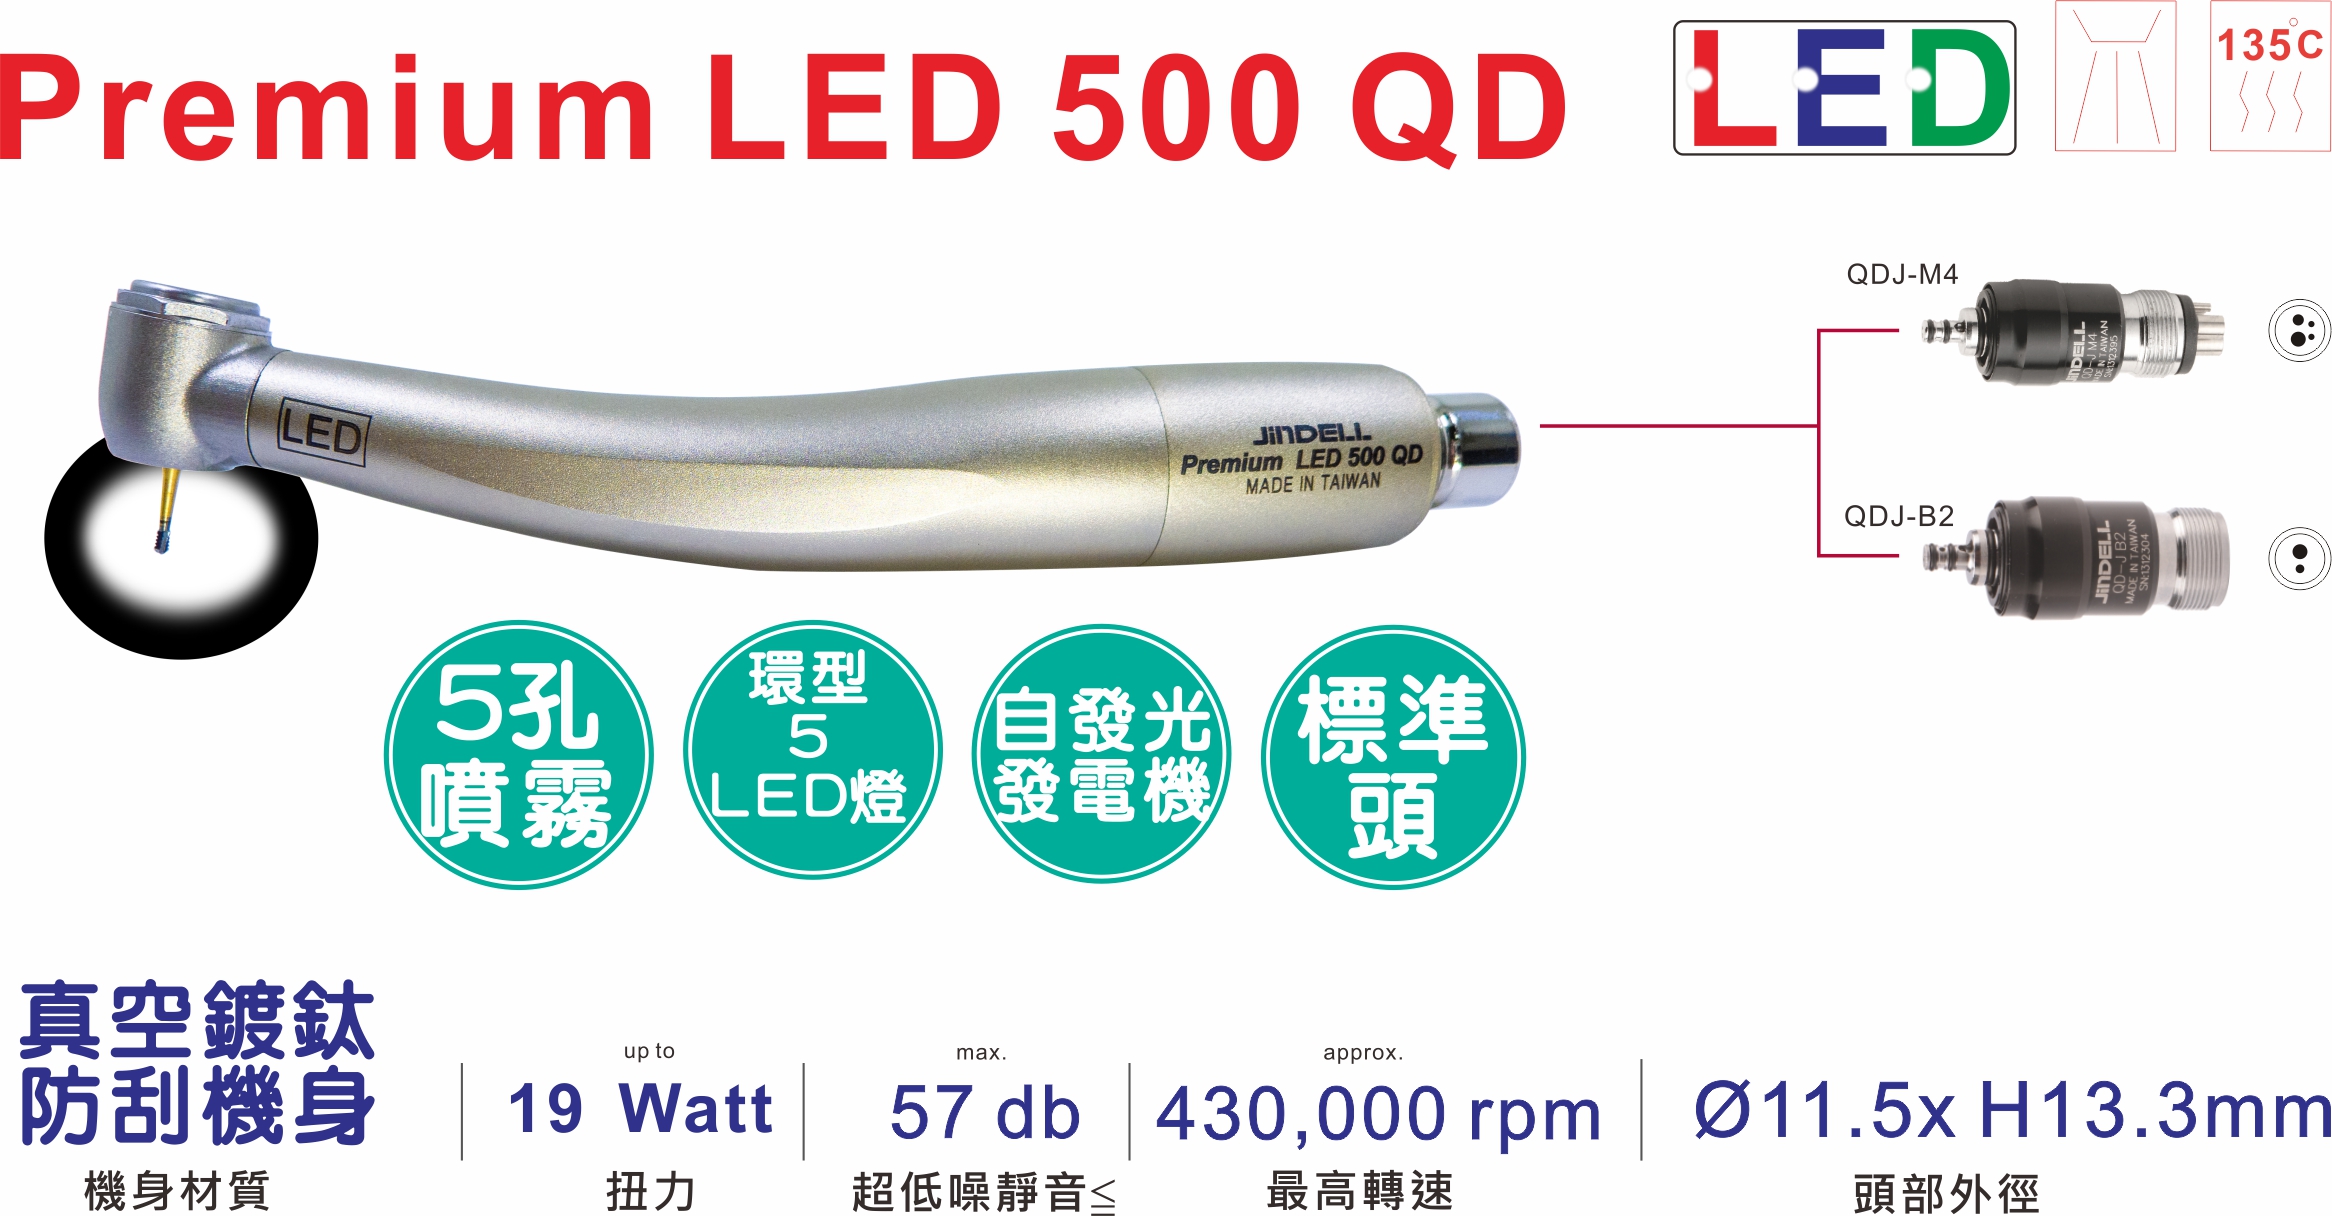 Premium LED 500 QD 中文特點